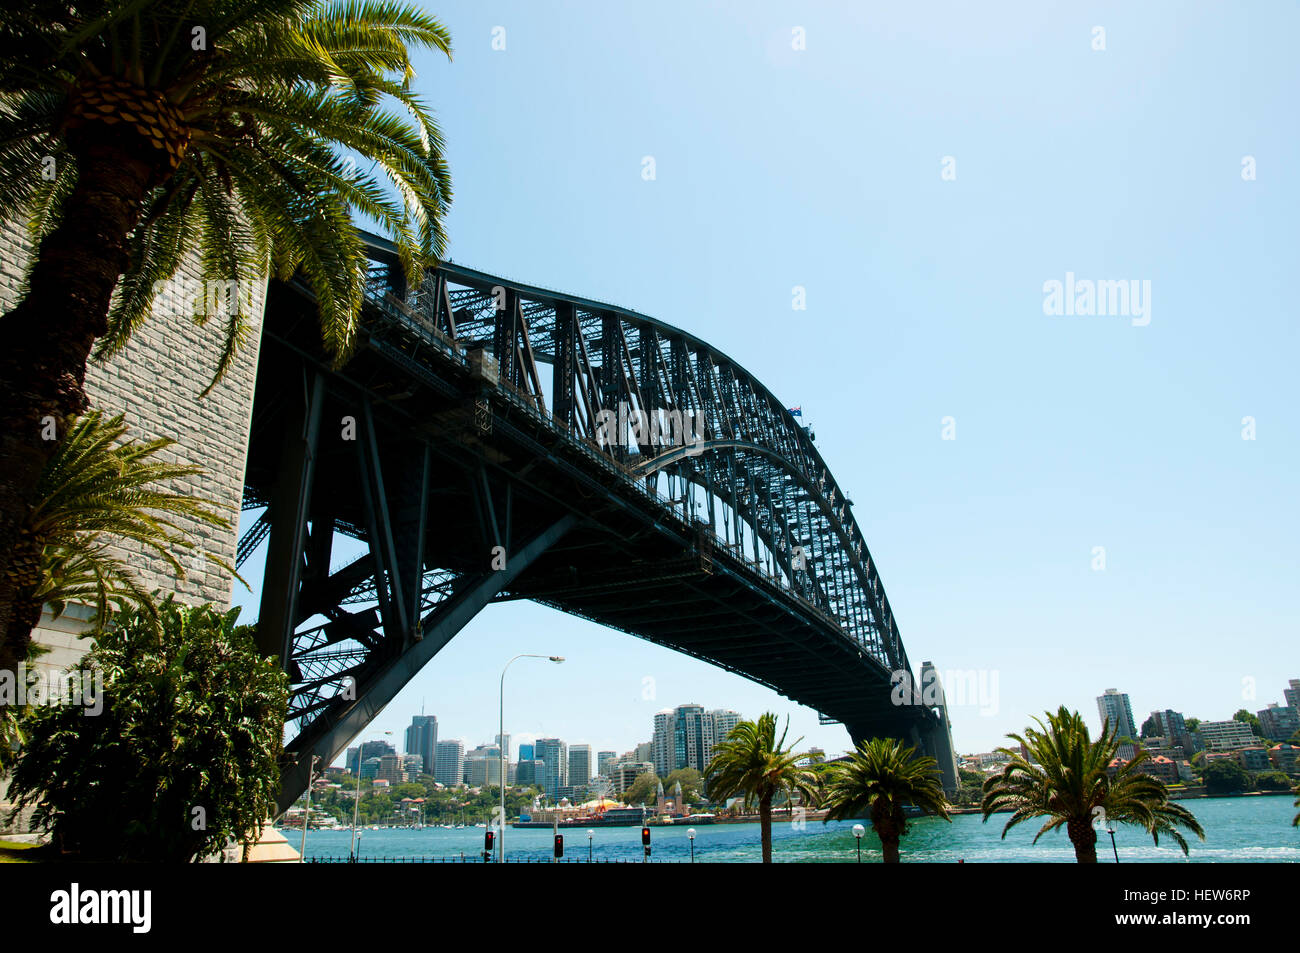 Le pont Harbour Bridge de Sydney - Australie Banque D'Images